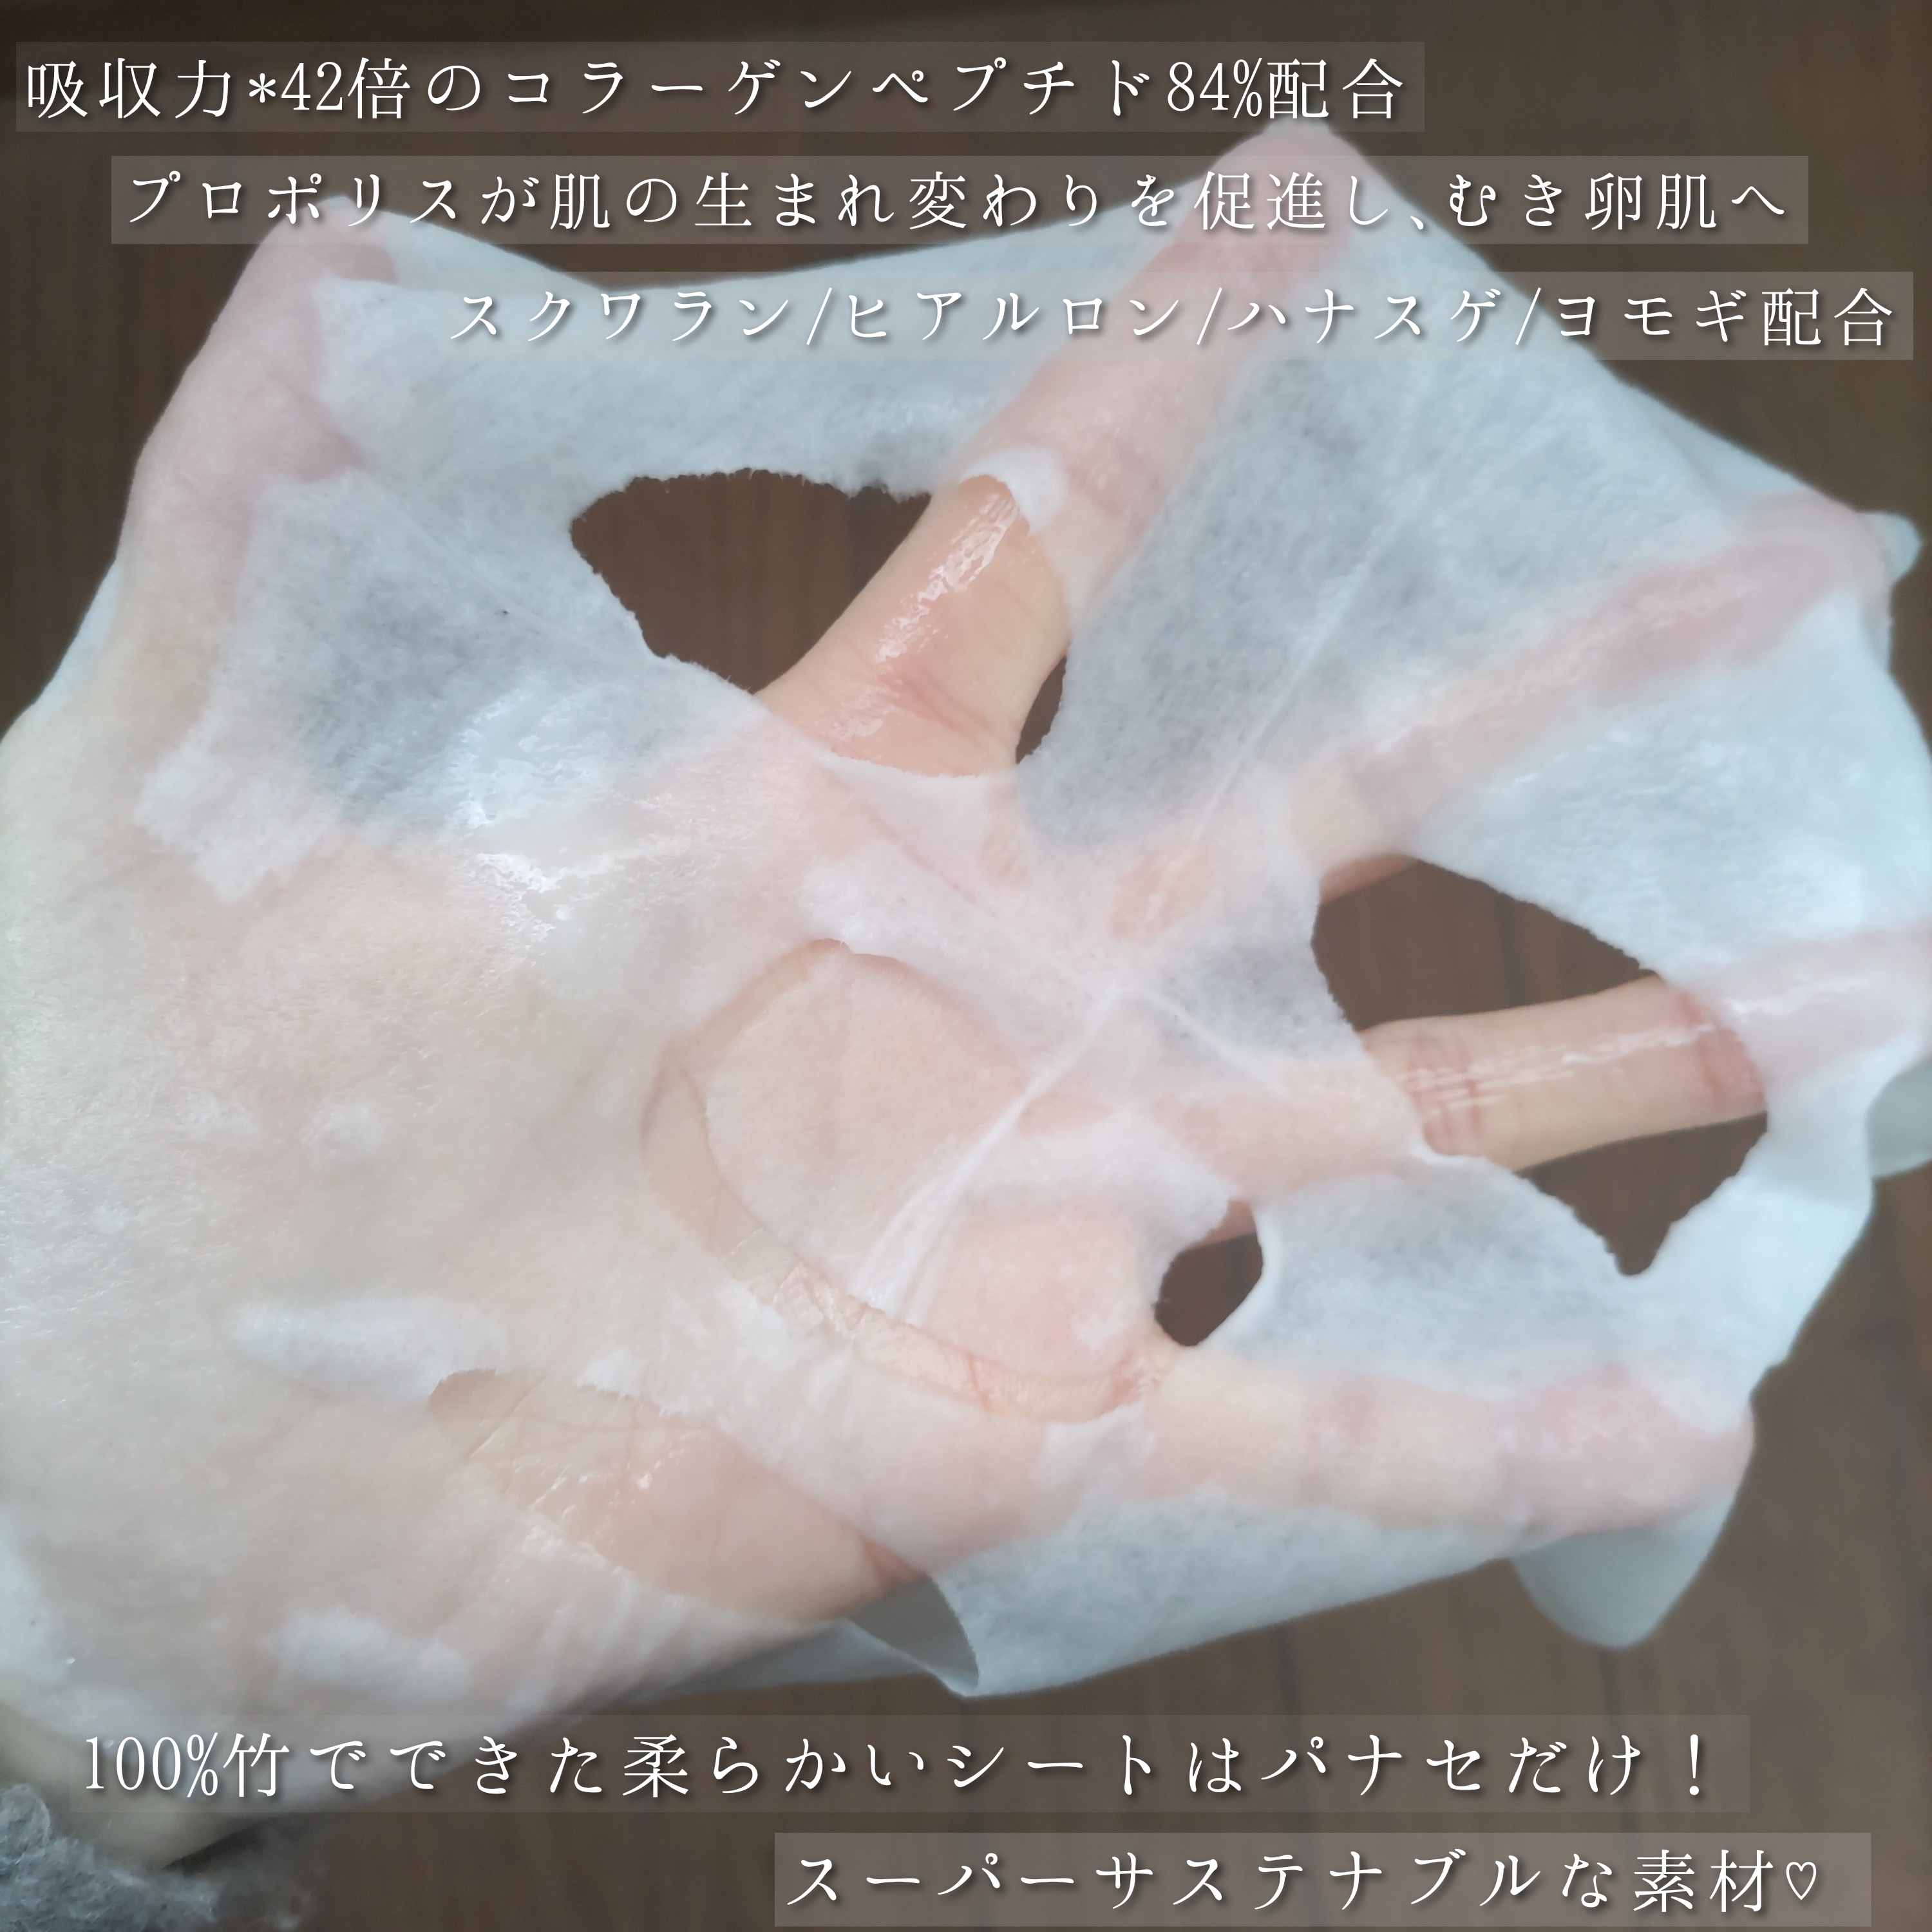 PANACÈE TOKYO モイストチャージ Cマスクを使ったYuKaRi♡さんのクチコミ画像4